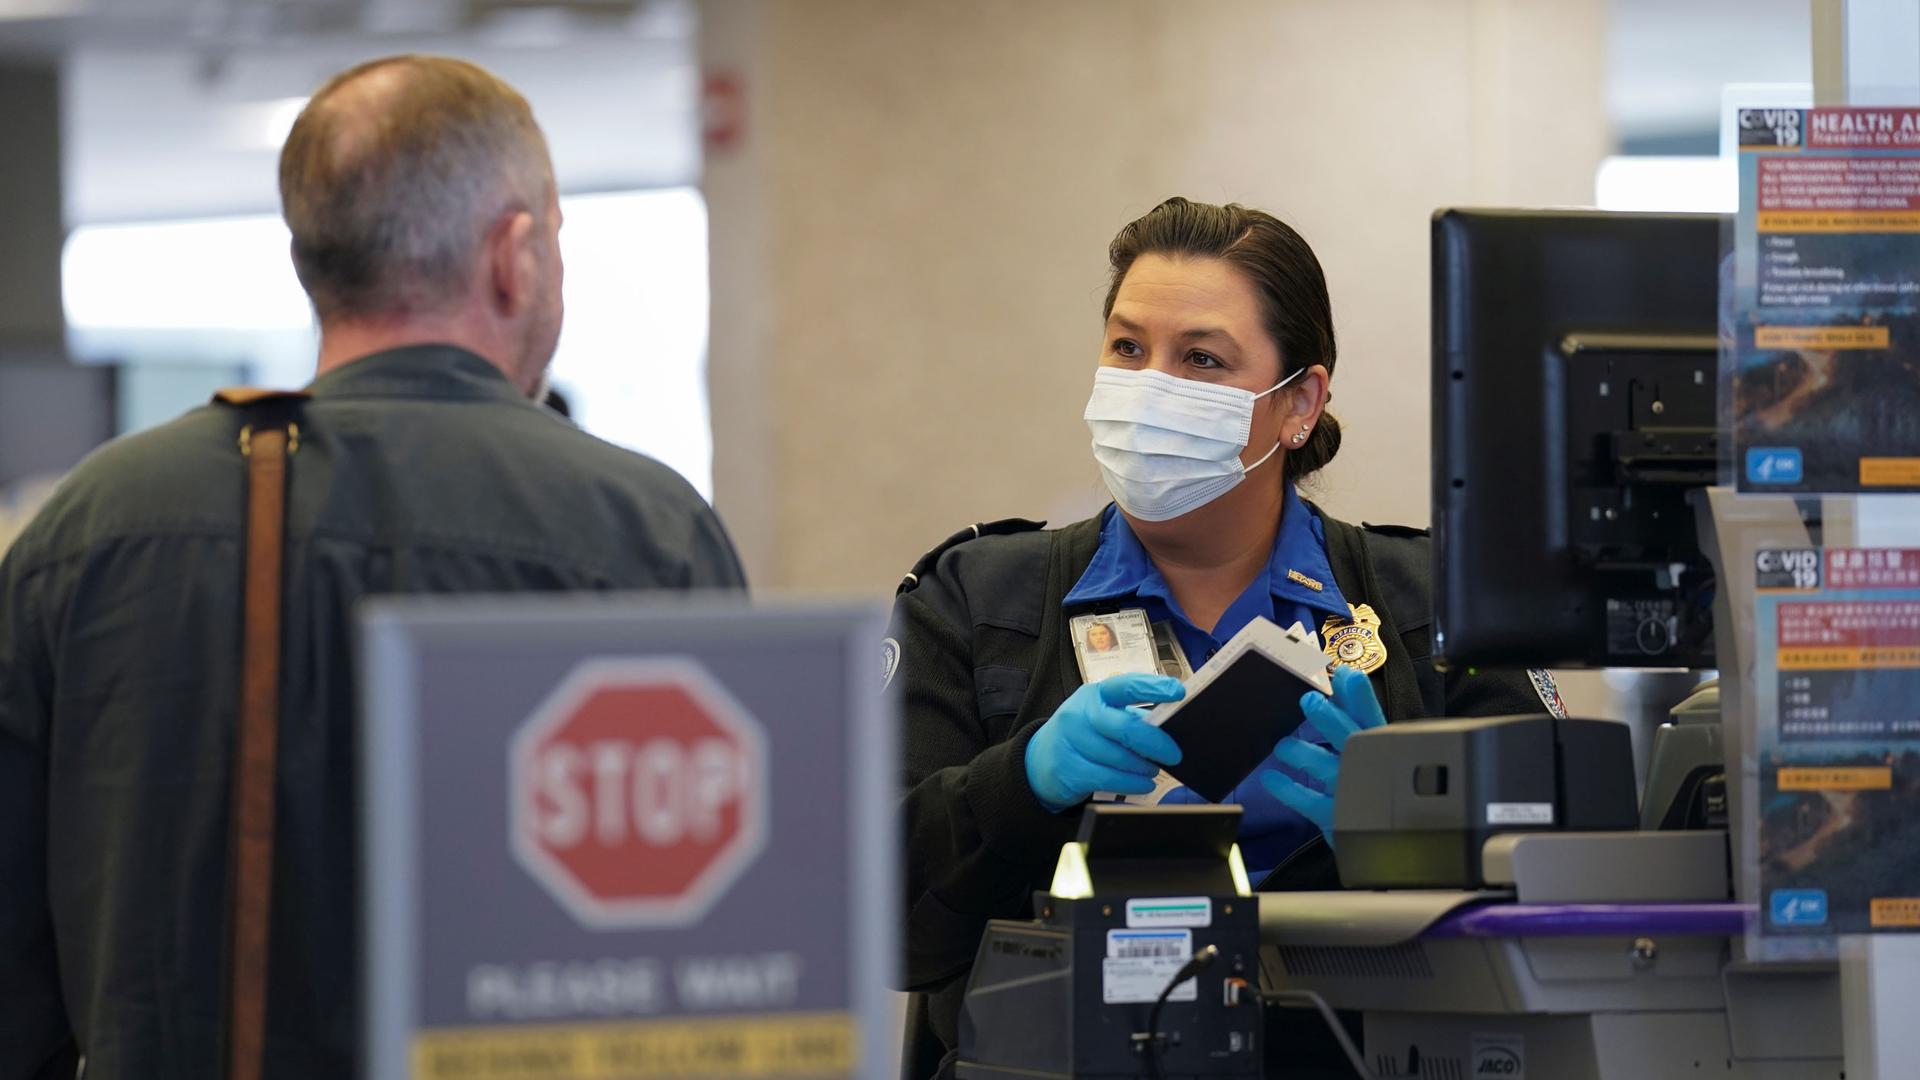 A TSA officer wearing a face mask clears a departing passenger